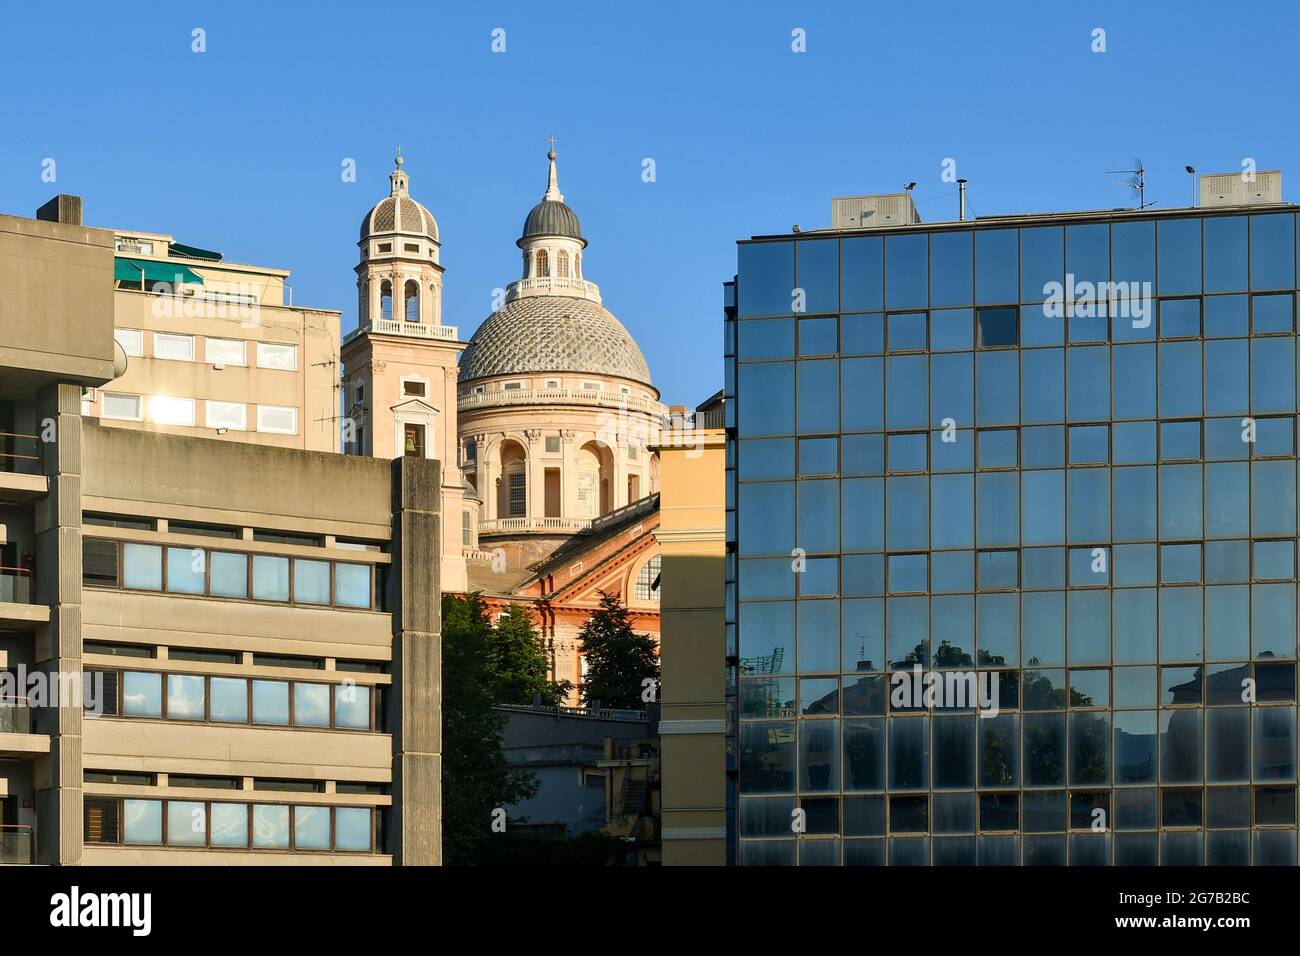 Contraste entre l'église Renaissance de Santa Maria Assunta (1552) et les palais modernes (1969-1973) dans le quartier de Carignano, Gênes, Italie Banque D'Images